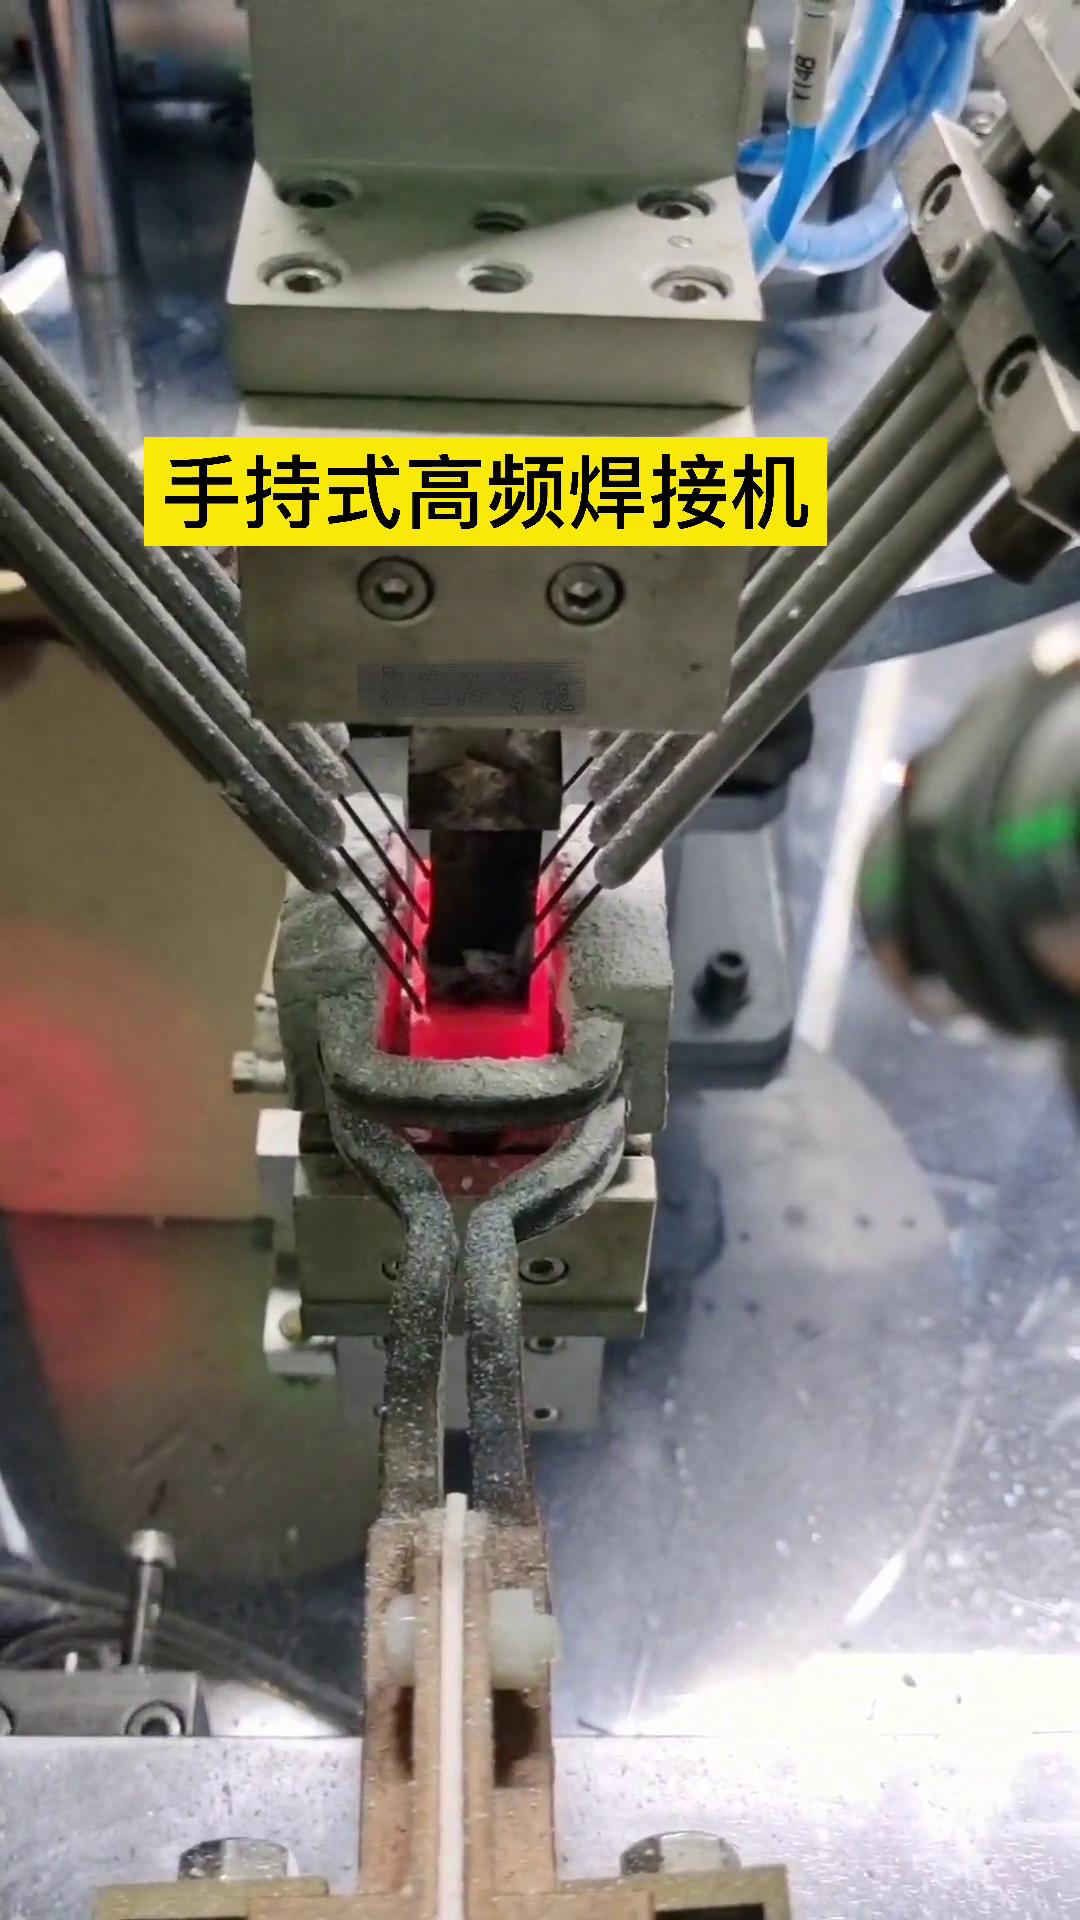 手持式高频焊接机配合自动化设备实现自动送料焊接